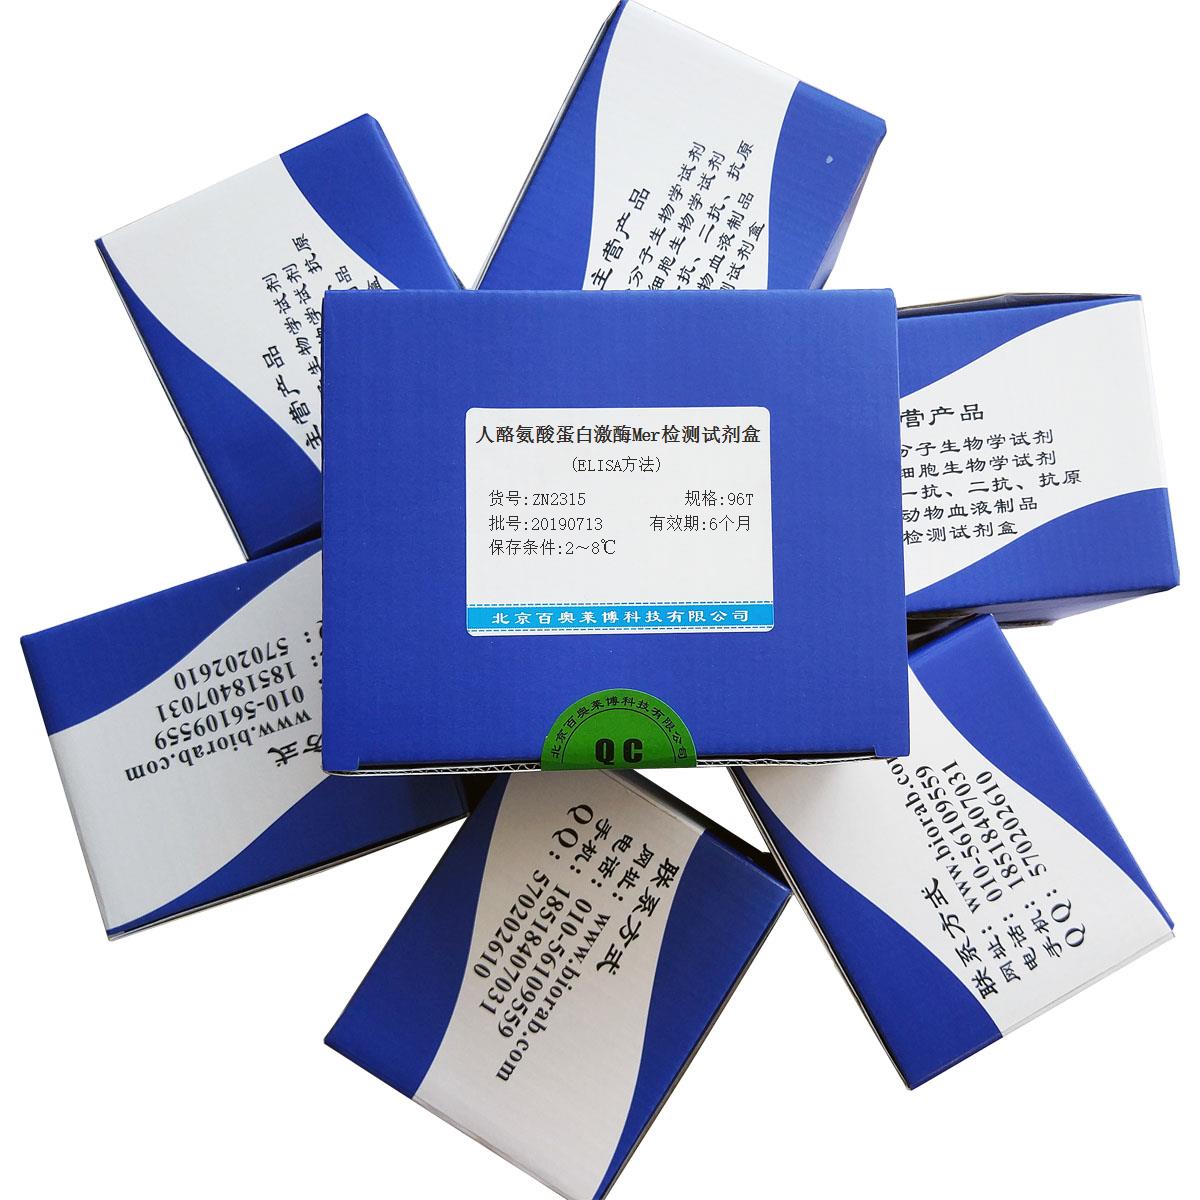 人酪氨酸蛋白激酶Mer检测试剂盒(ELISA方法)